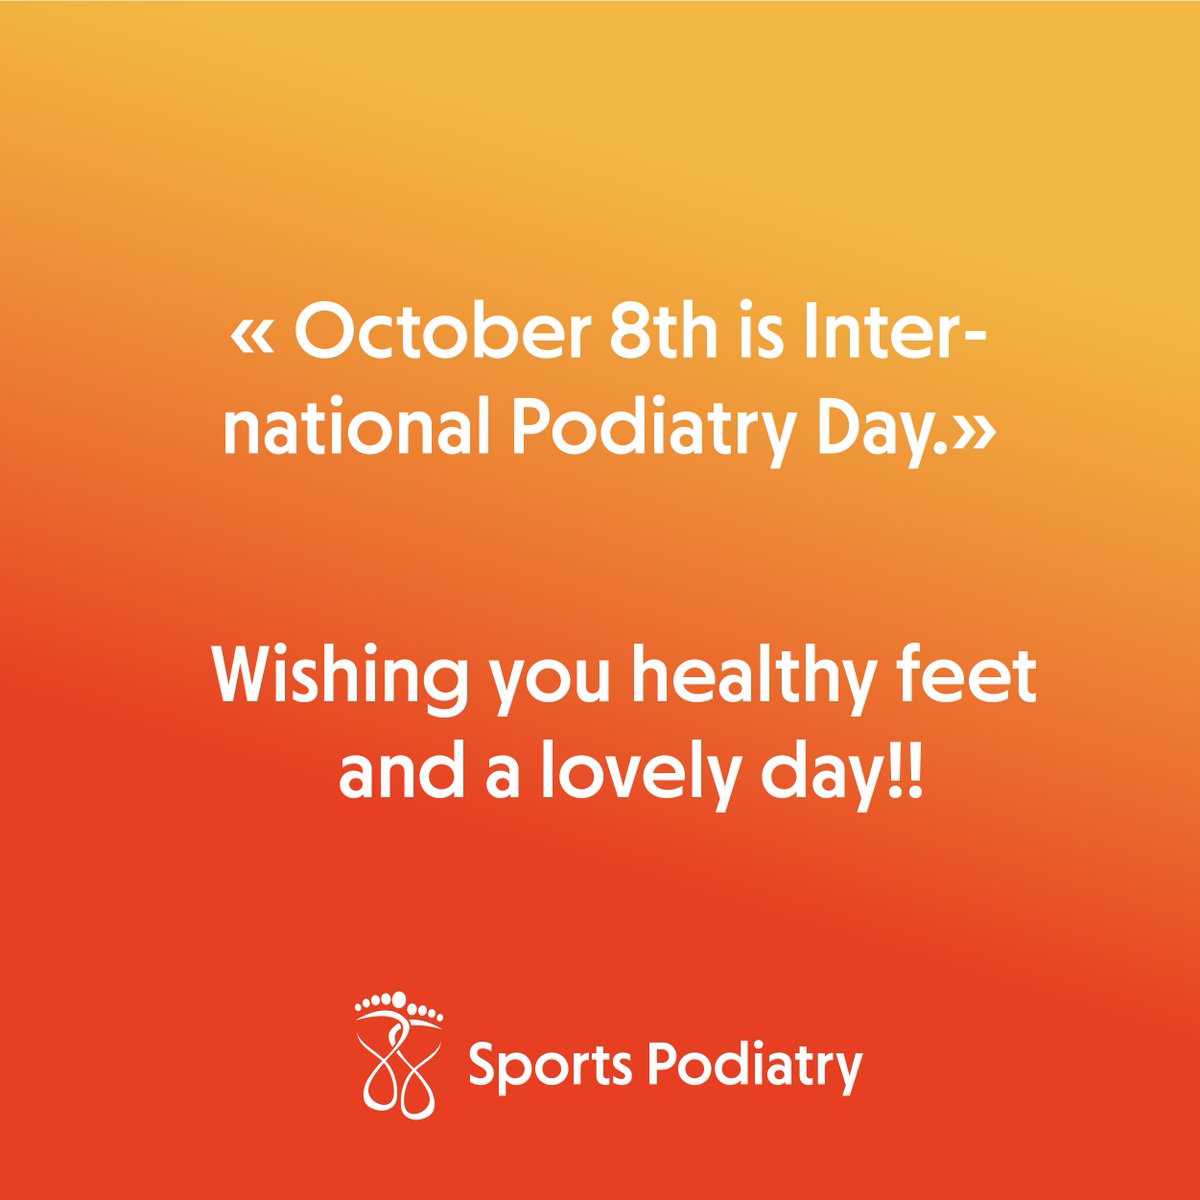 Le 8 octobre est la JOURNÉE INTERNATIONALE DE LA PODIATRIE!! #sportspodiatry  #podiatryday2021 #podiatry  #defeatfootdisease #InternationalPodiatryDay